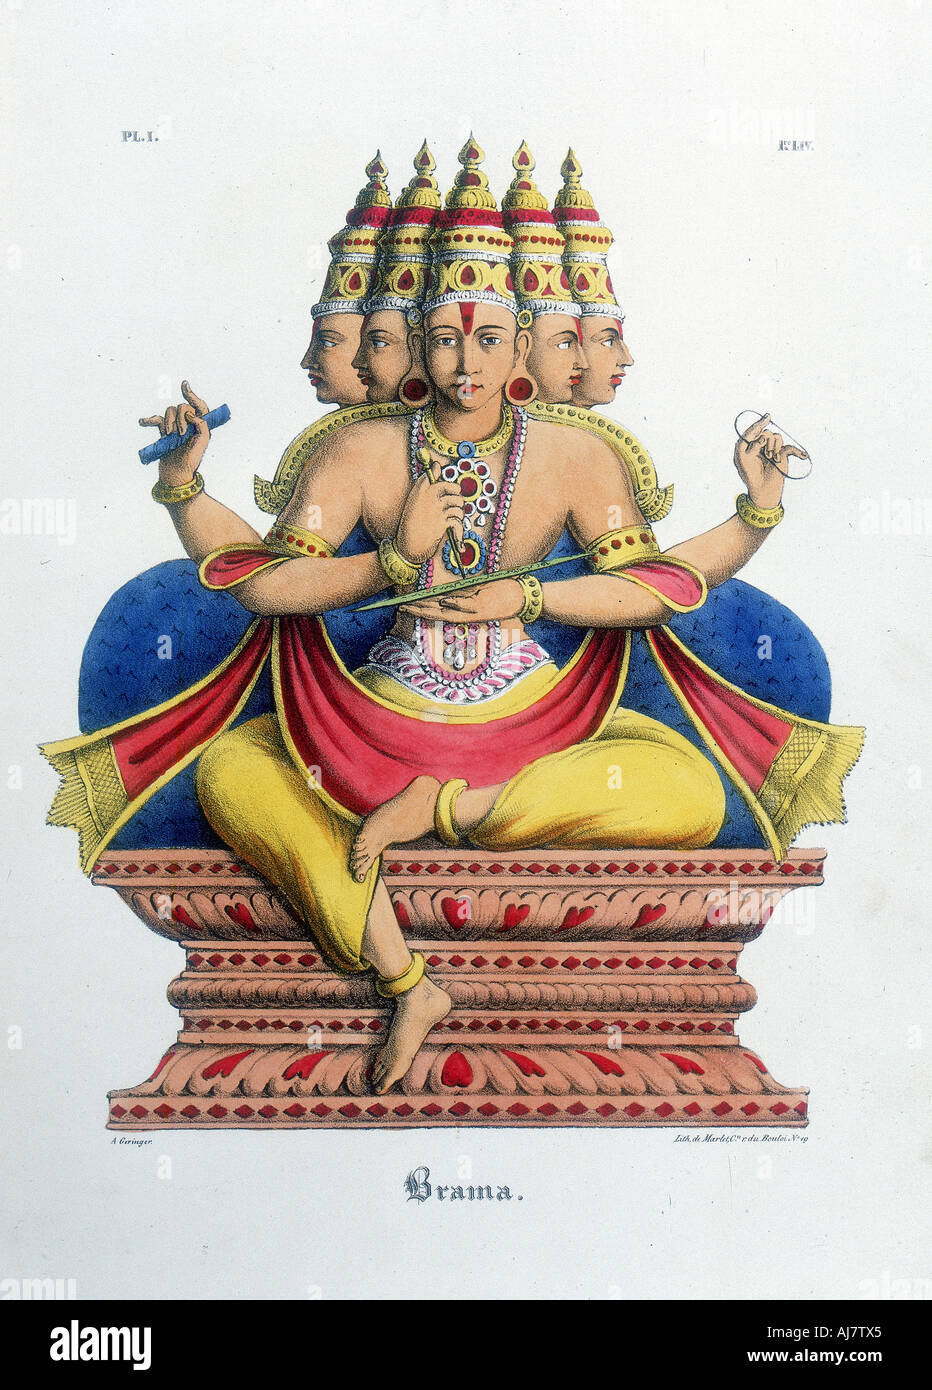 Brahma, le premier dieu de la trinité hindoue (trimurti), et créateur de l'univers, c du xixe siècle. Artiste : UN Geringer Banque D'Images